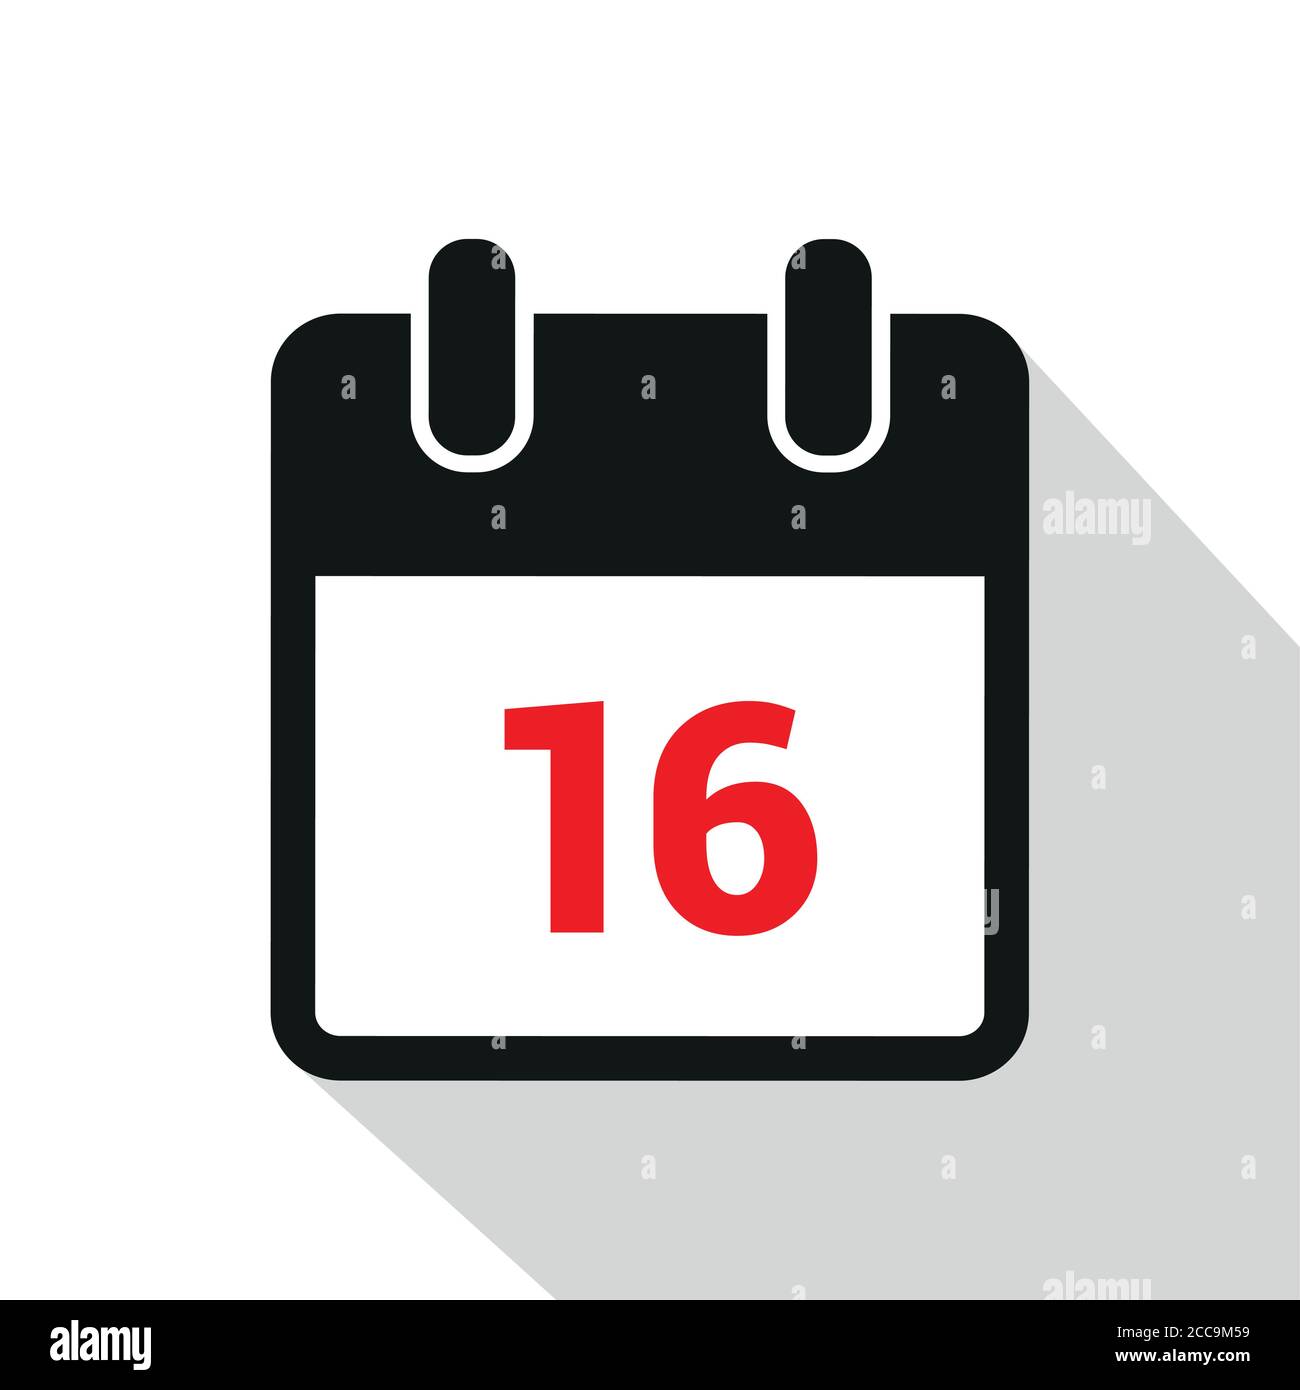 Einfaches Kalendersymbol 16 auf weißer Hintergrundvektor-Abbildung EPS10 Stock Vektor